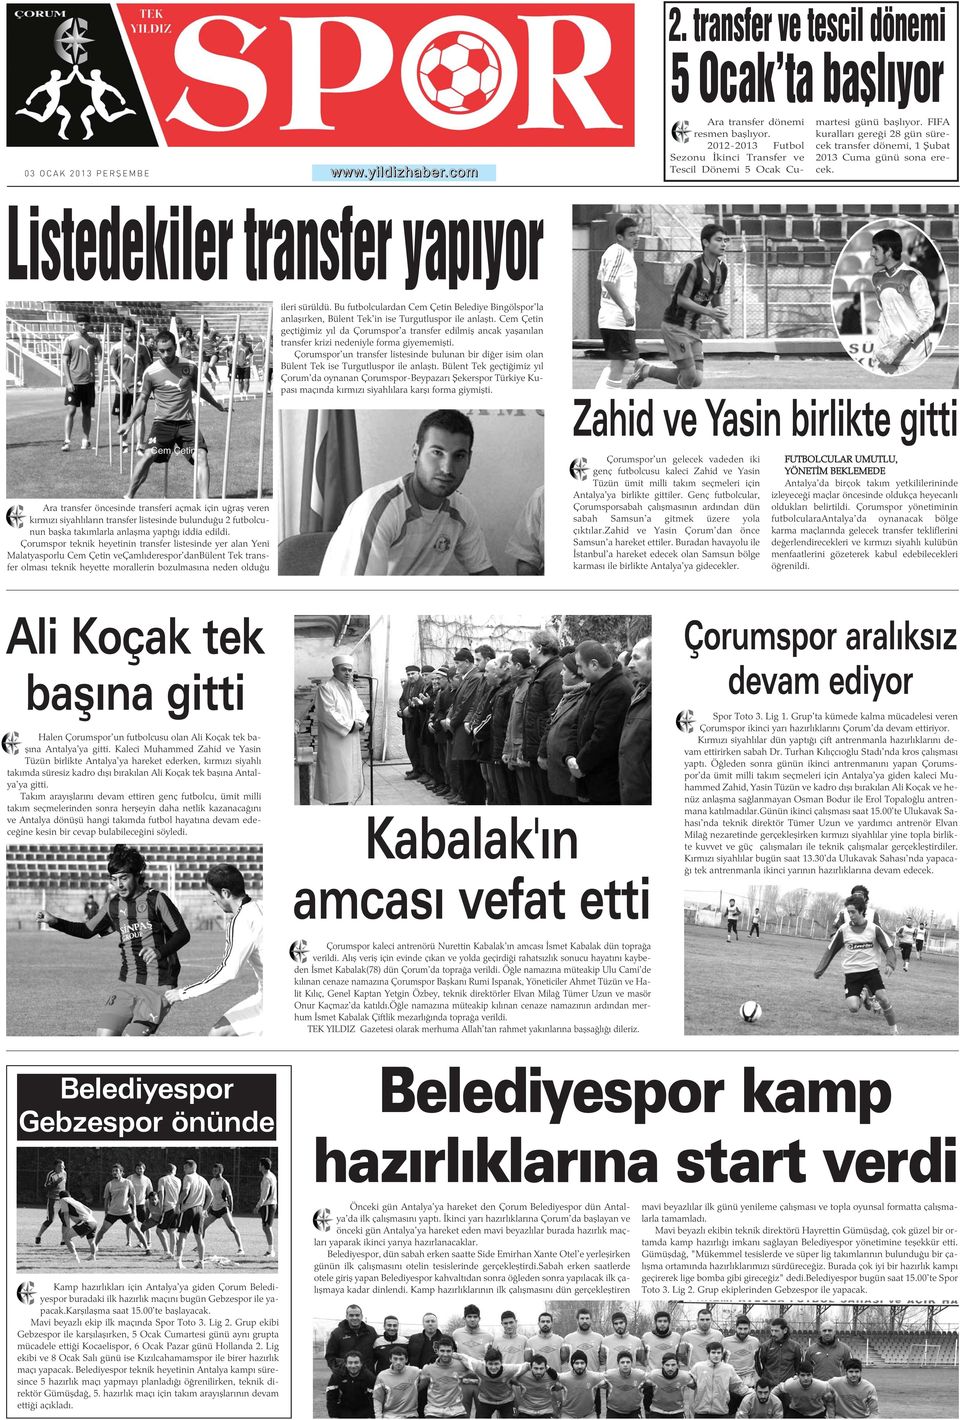 Bu futbolculardan Cem Çetin Belediye Bingölspor'la anlaþýrken, Bülent Tek'in ise Turgutluspor ile anlaþtý.